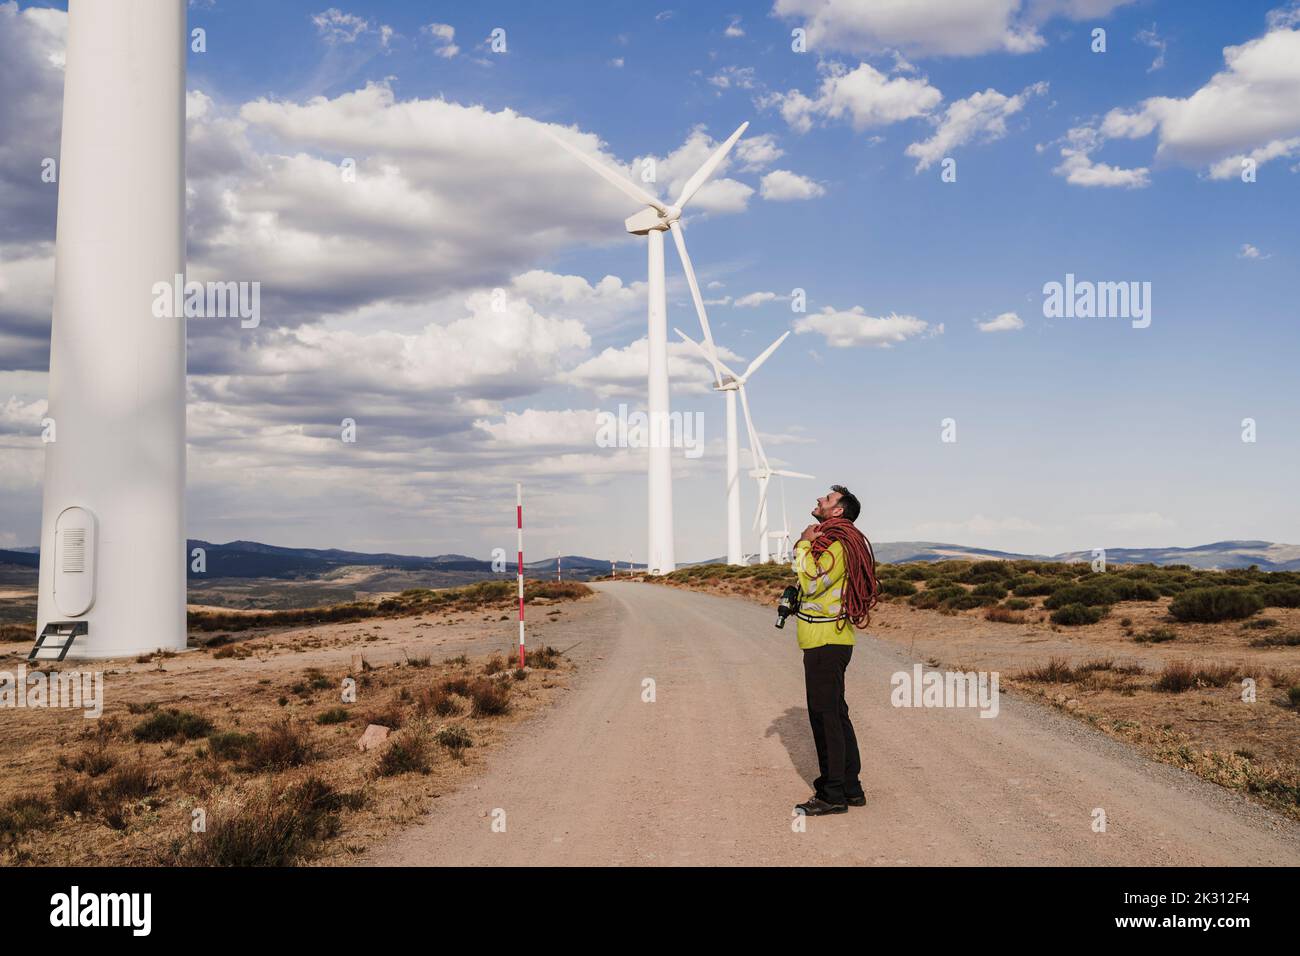 Technicien avec corde debout sur la route regardant l'éolienne Banque D'Images